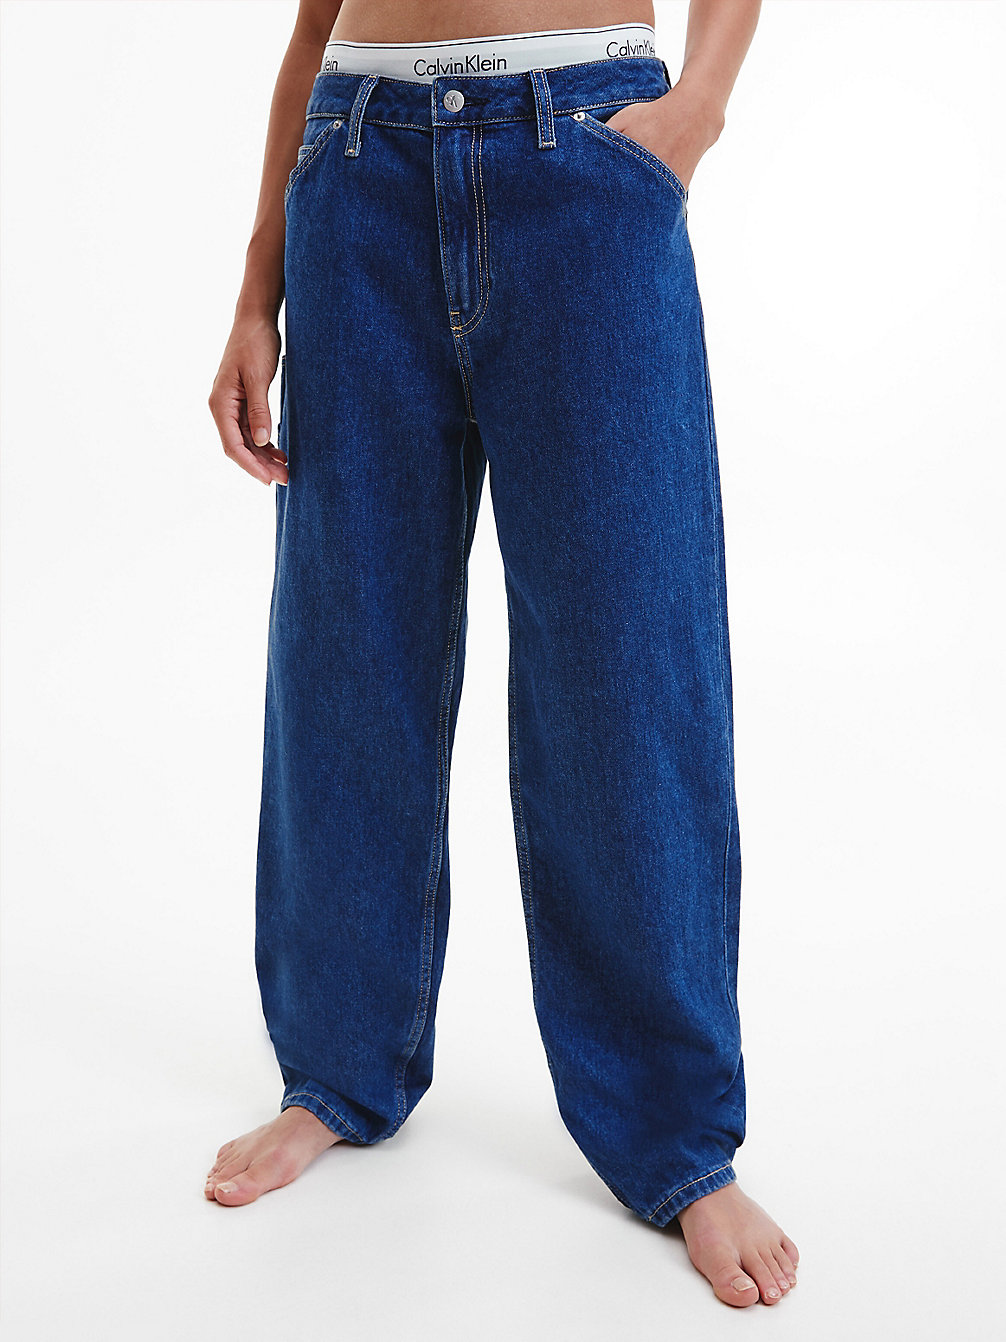 DENIM MEDIUM 90's Straight Utility Jeans undefined Damen Calvin Klein